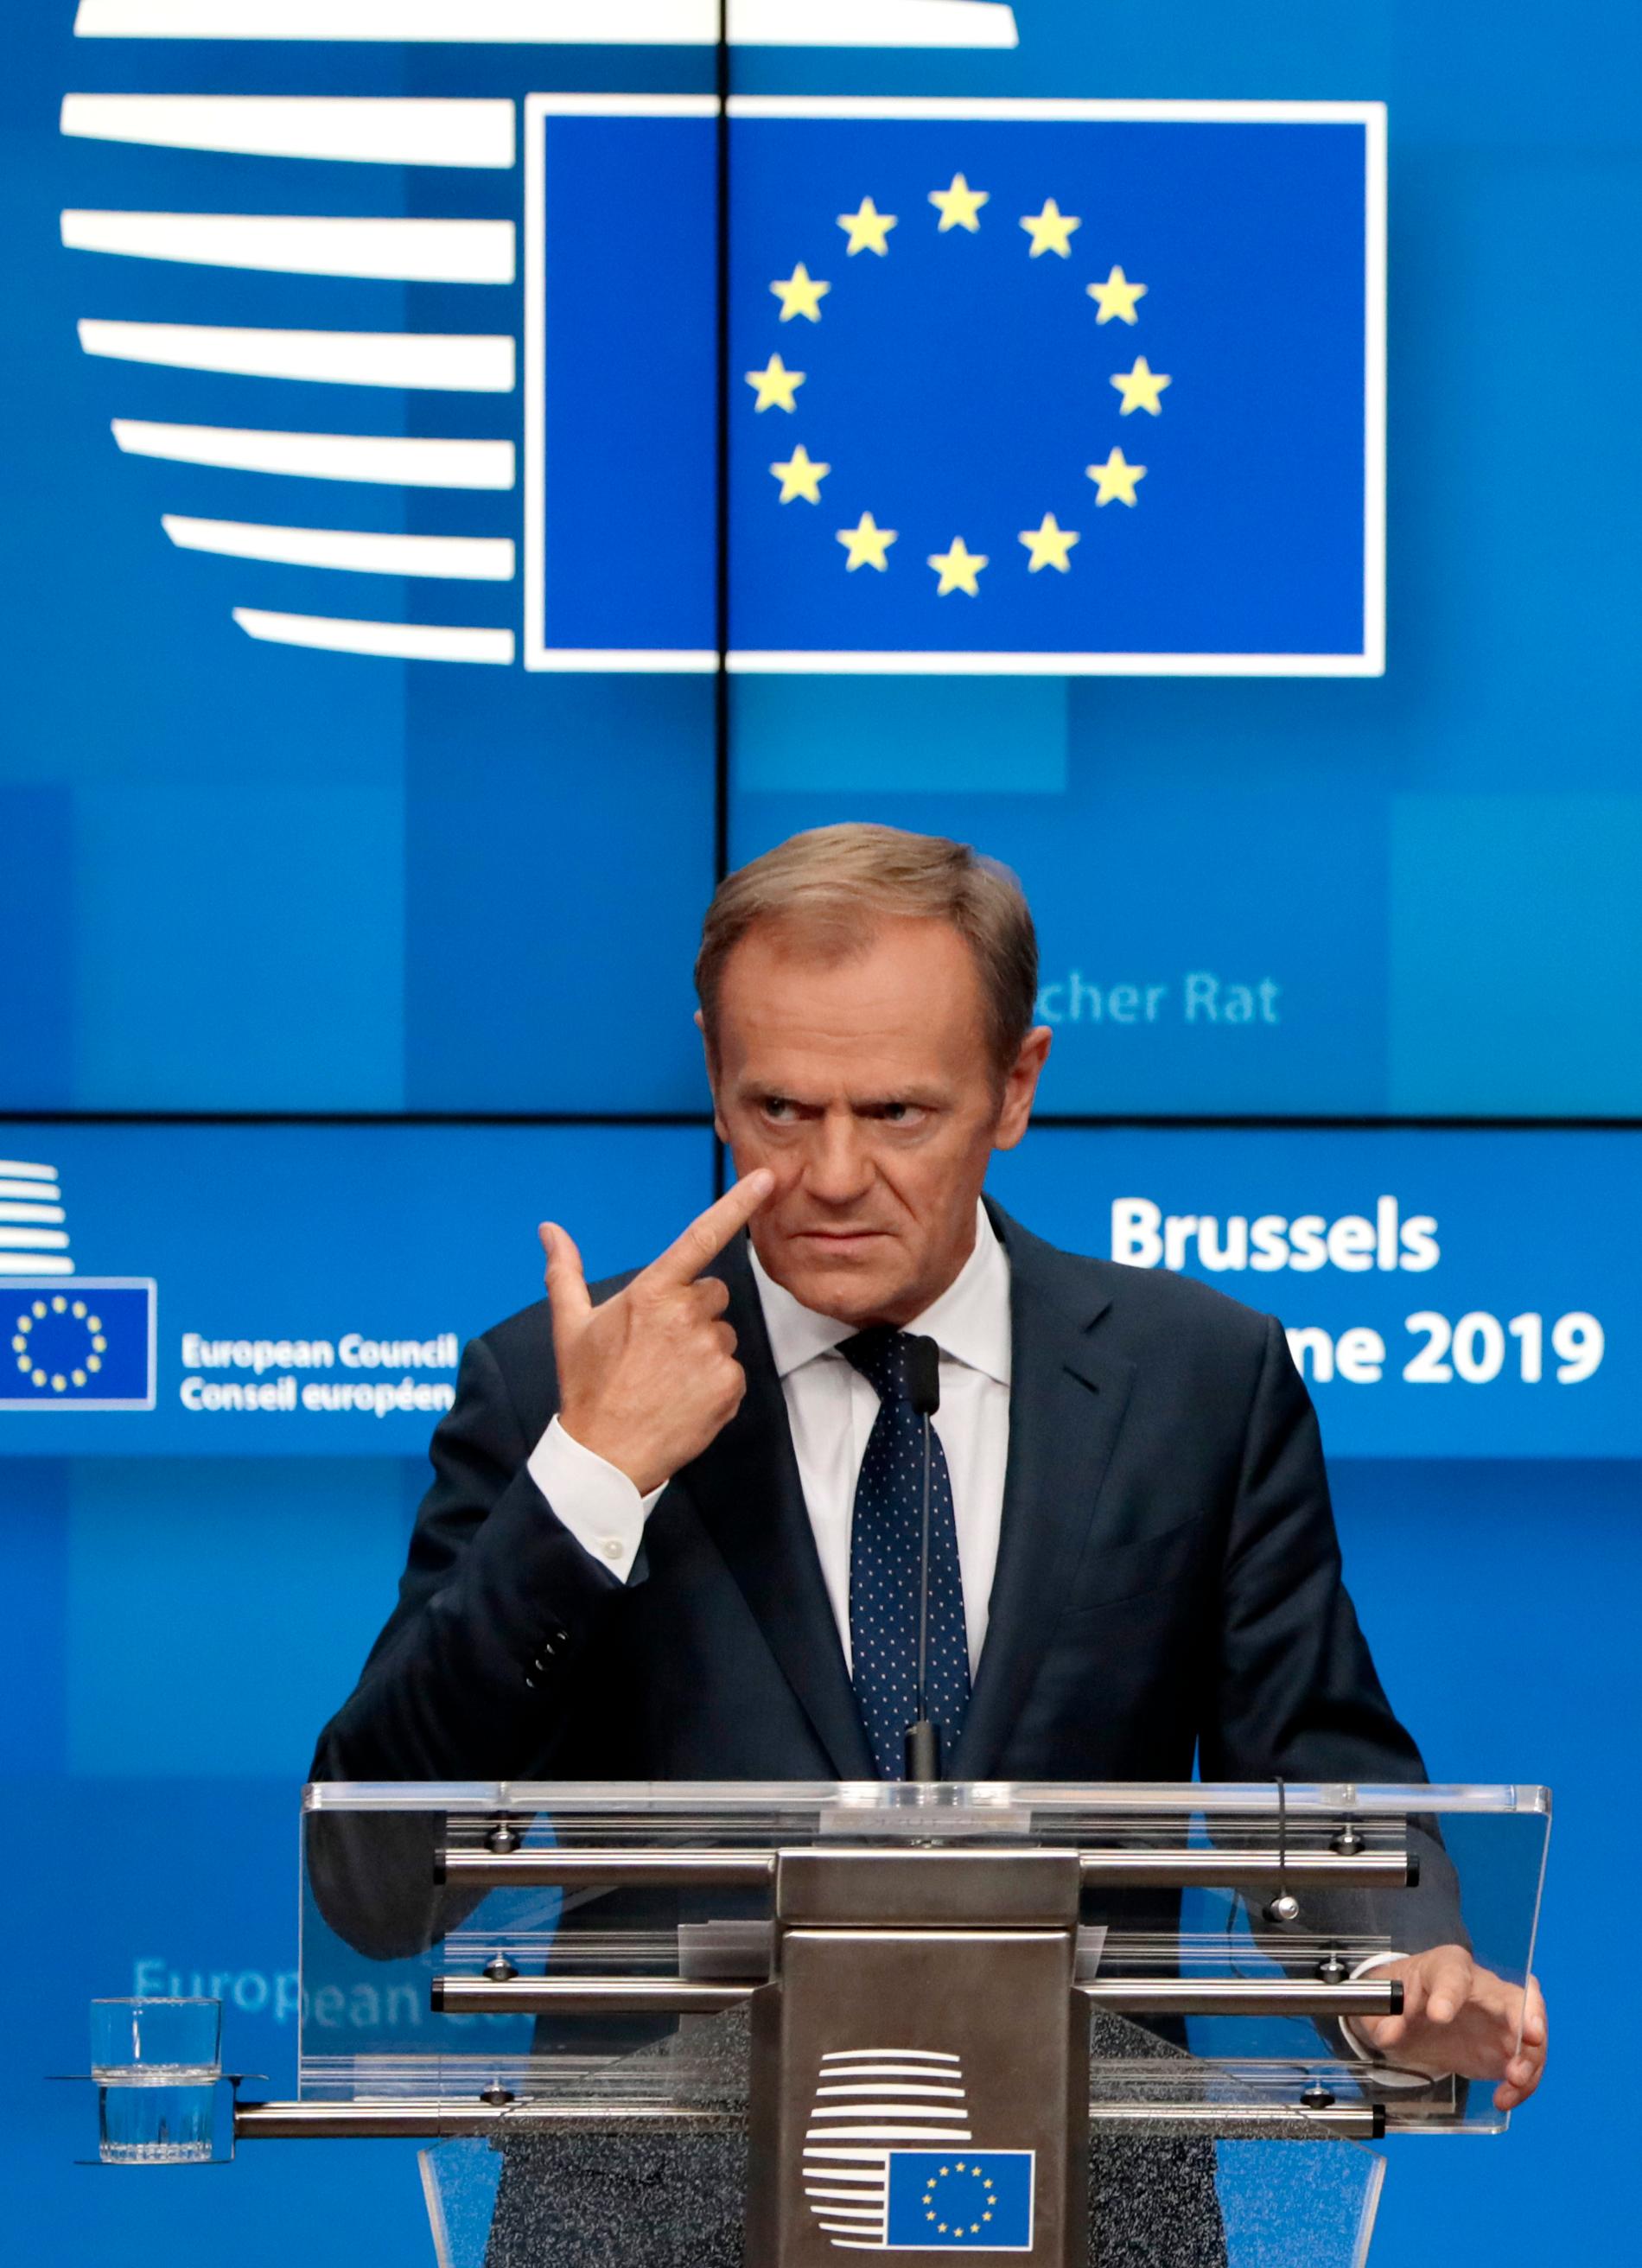 EU:s permanente rådsordförande Donald Tusk får leta vidare efter kandidater till topposterna i EU efter midsommarens toppmöte i Bryssel.